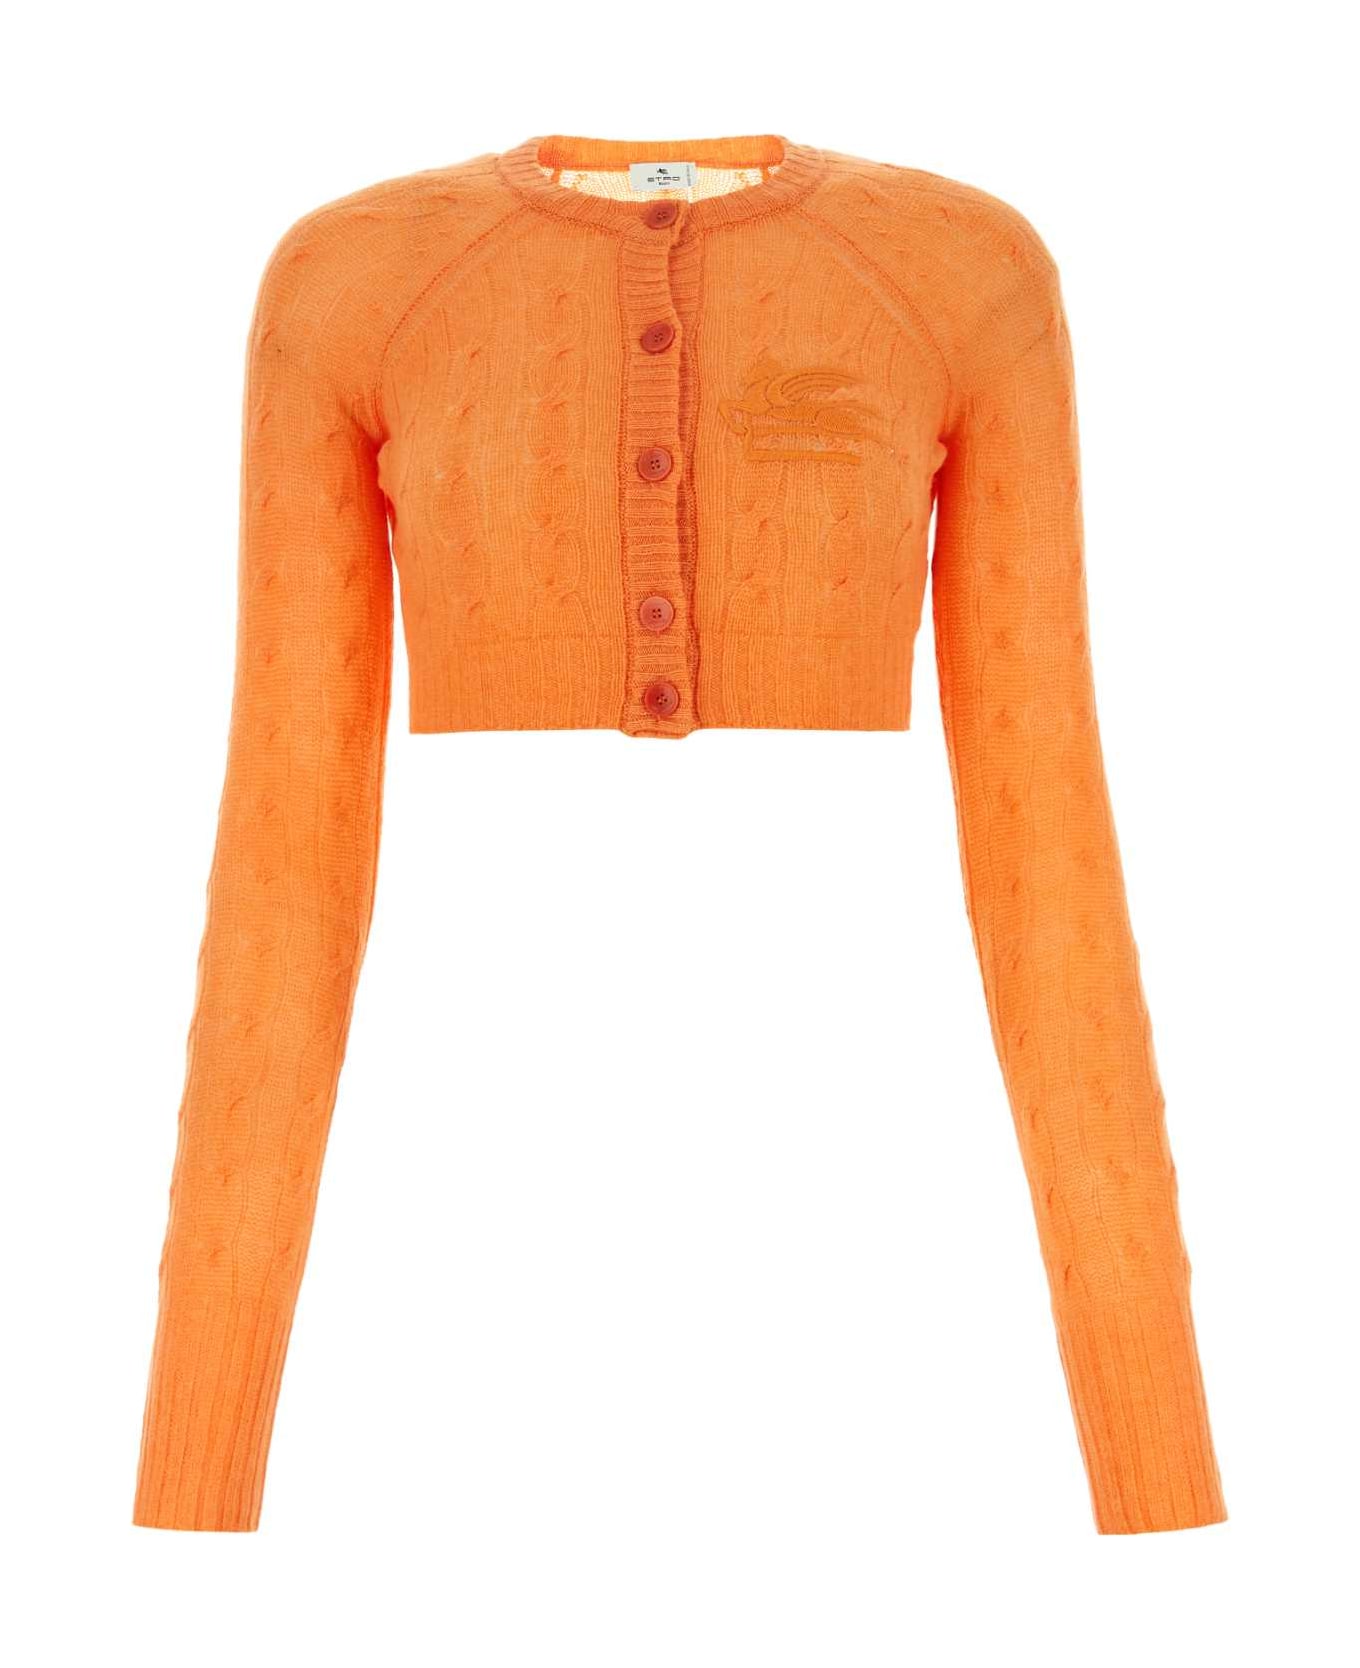 Etro Orange Cashmere Cardigan - Orange